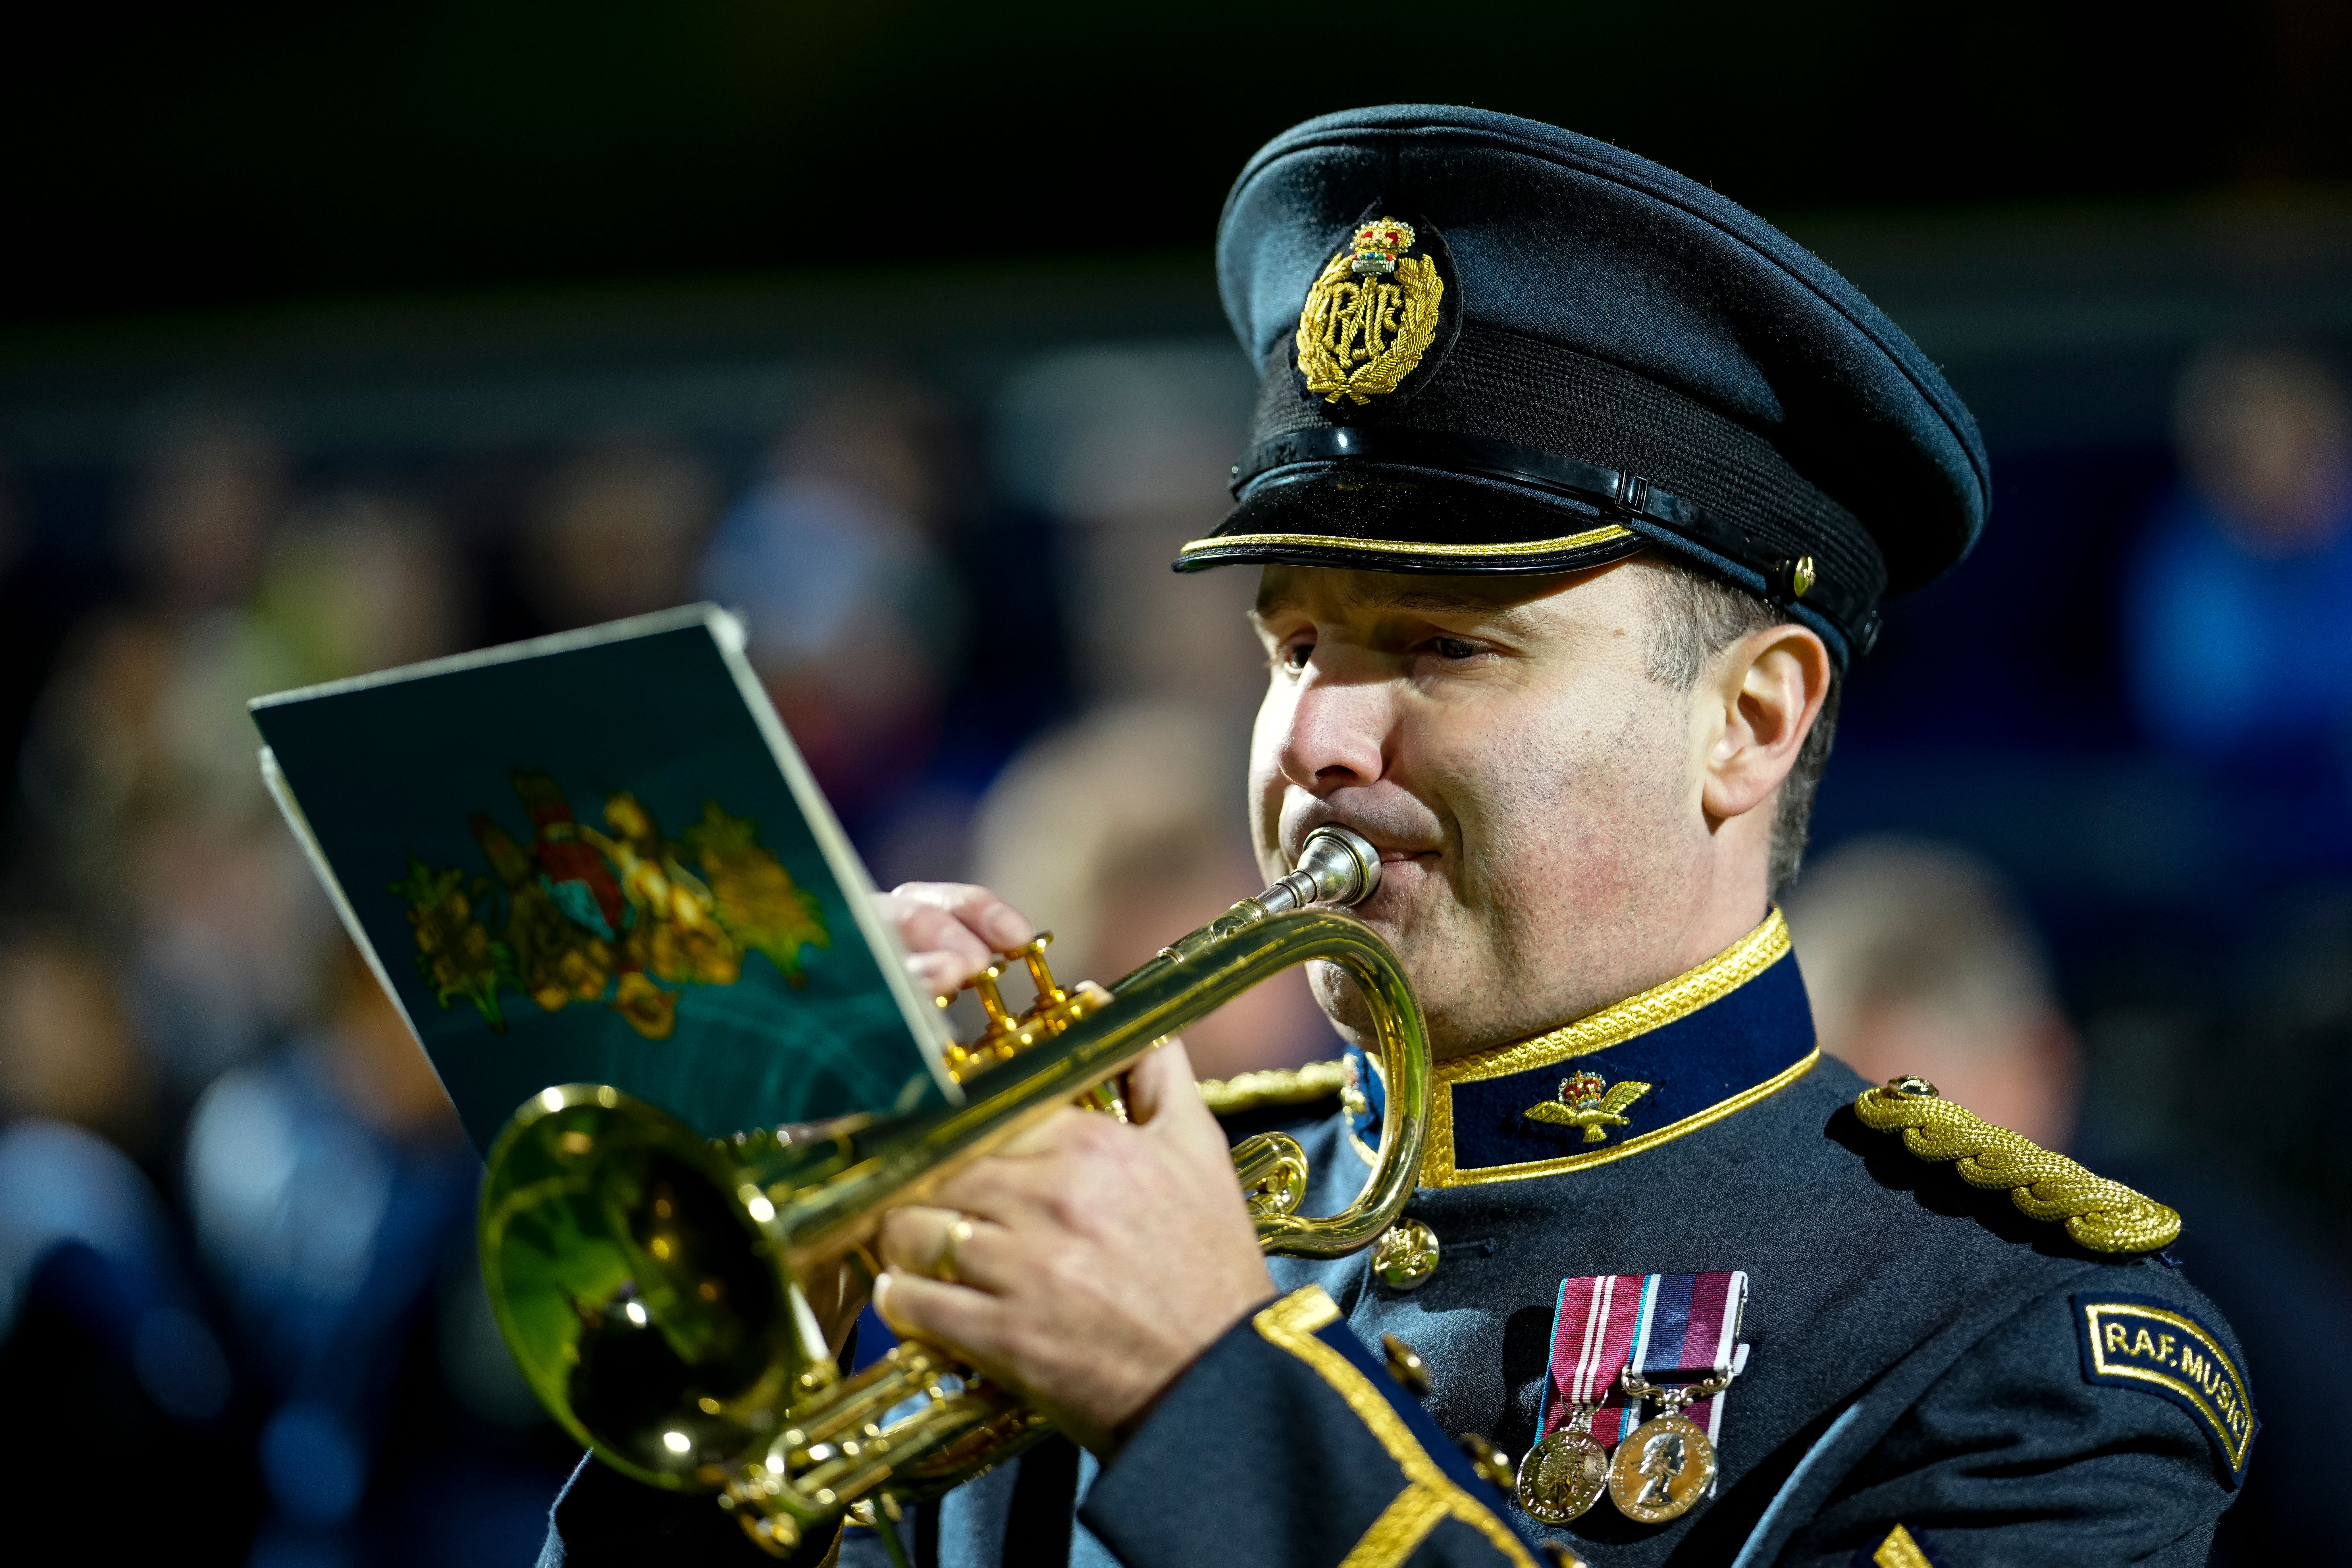 Sergeant Ringham plays trumpet.